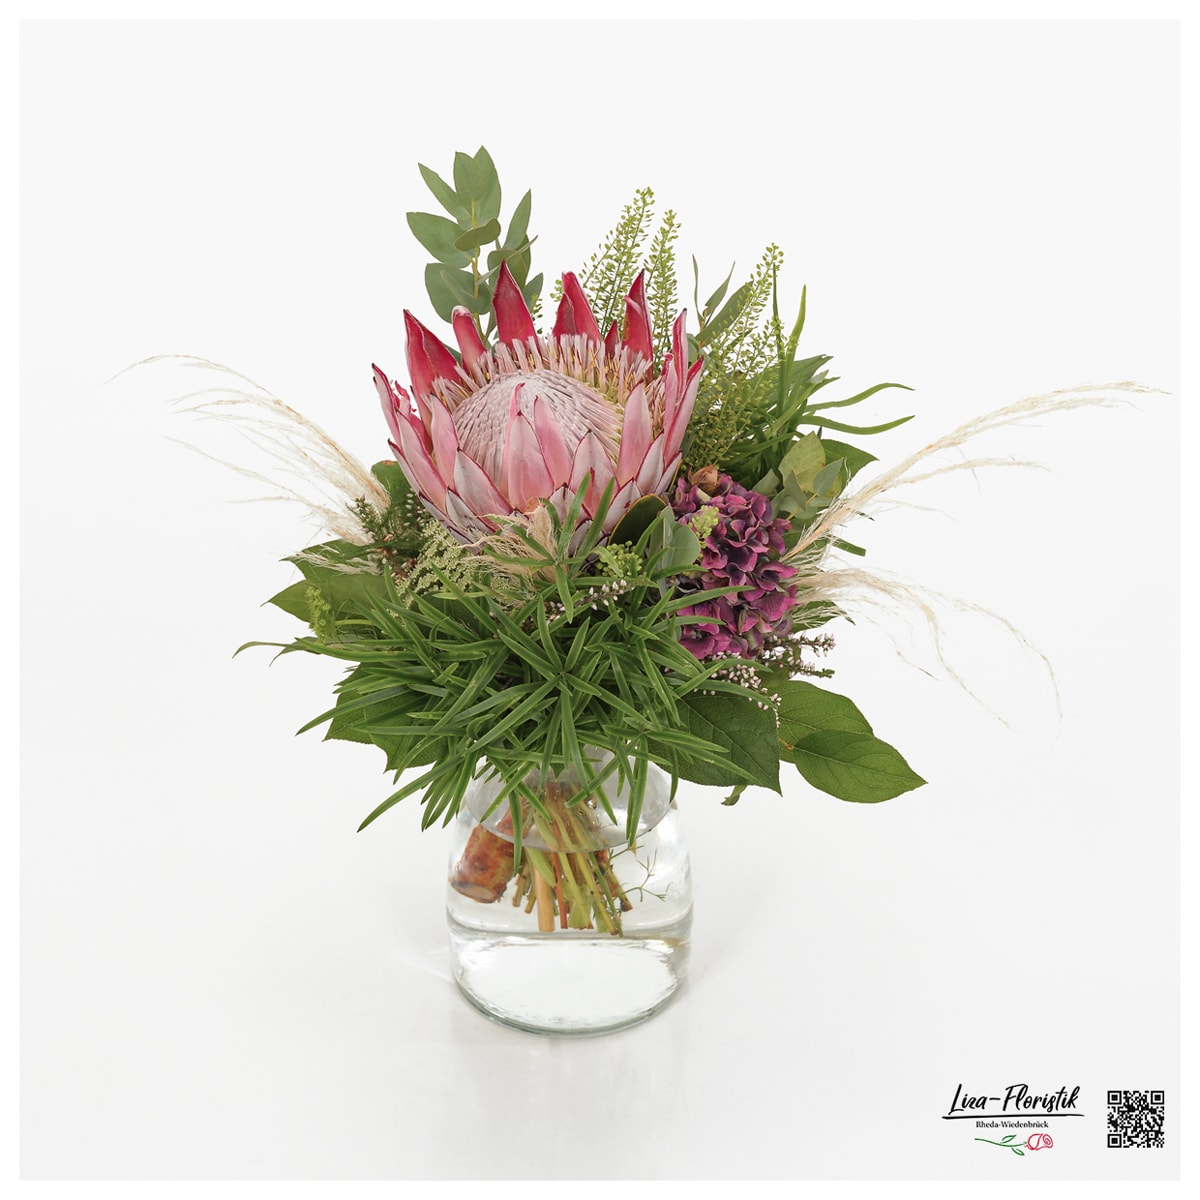 Blumenstrauß mit Protea, Eukalyptus, Thlaspi und Hortensie